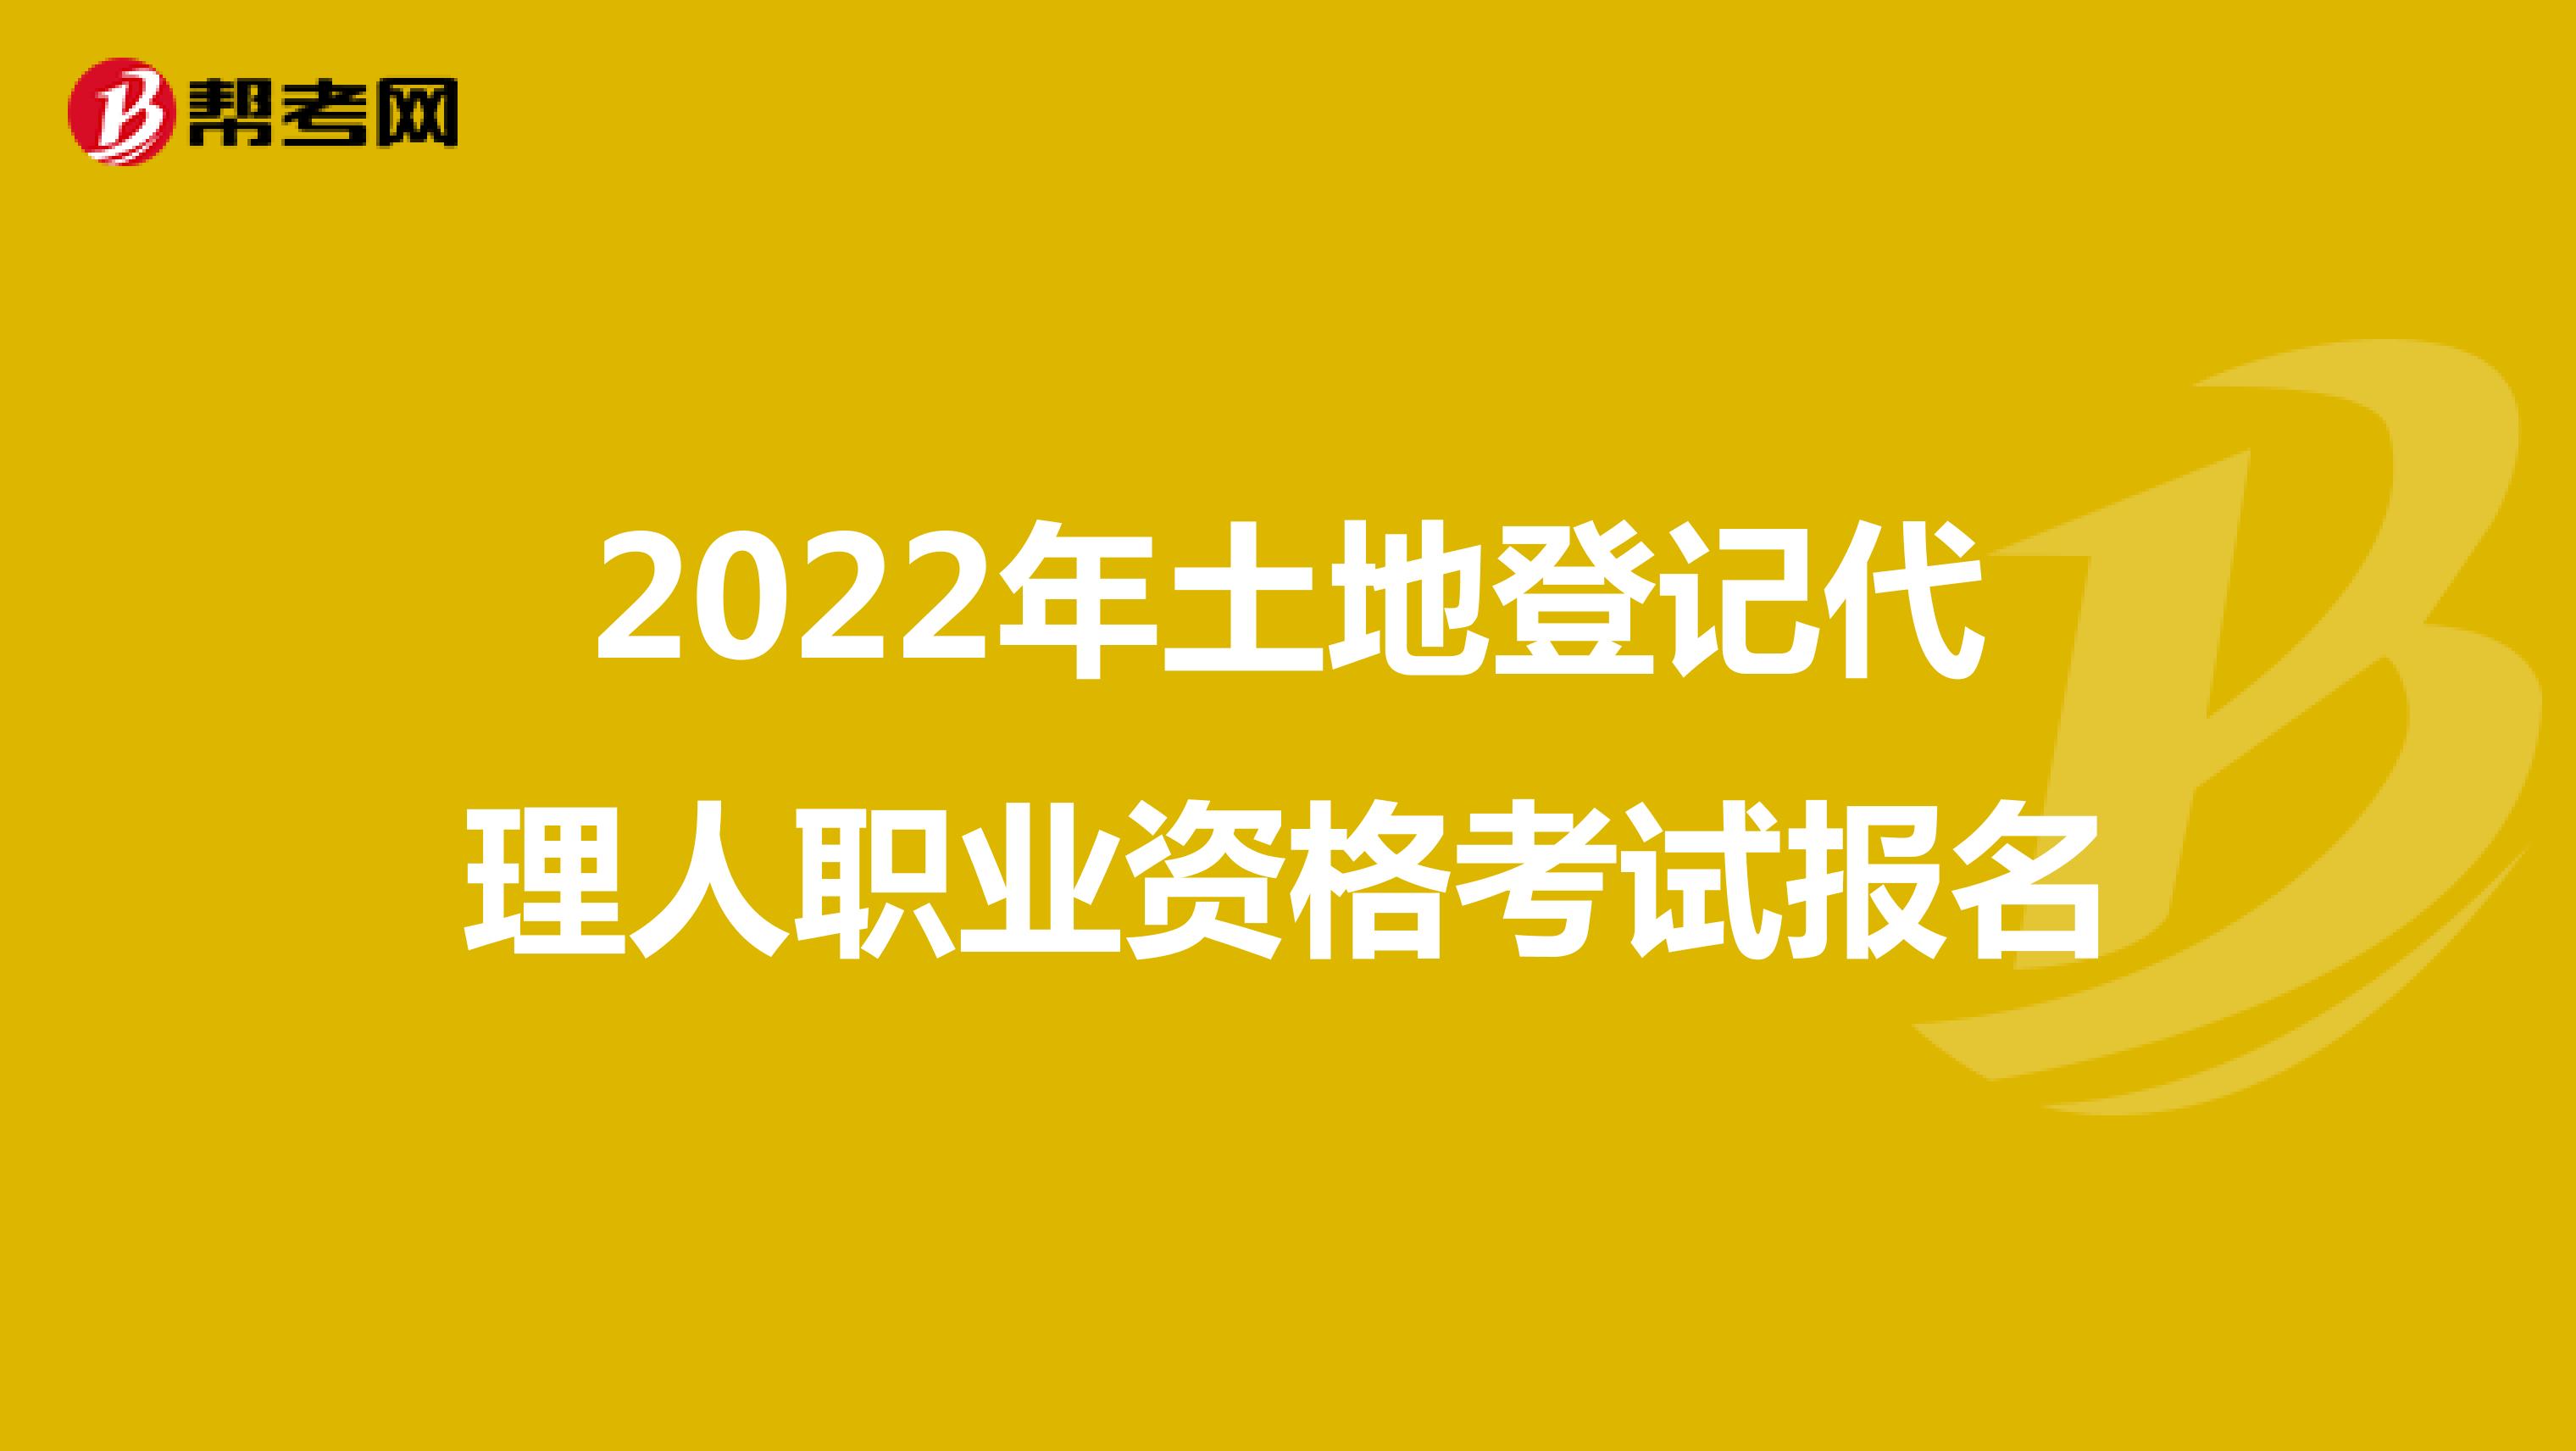 2022年土地登记代理人职业资格考试报名流程